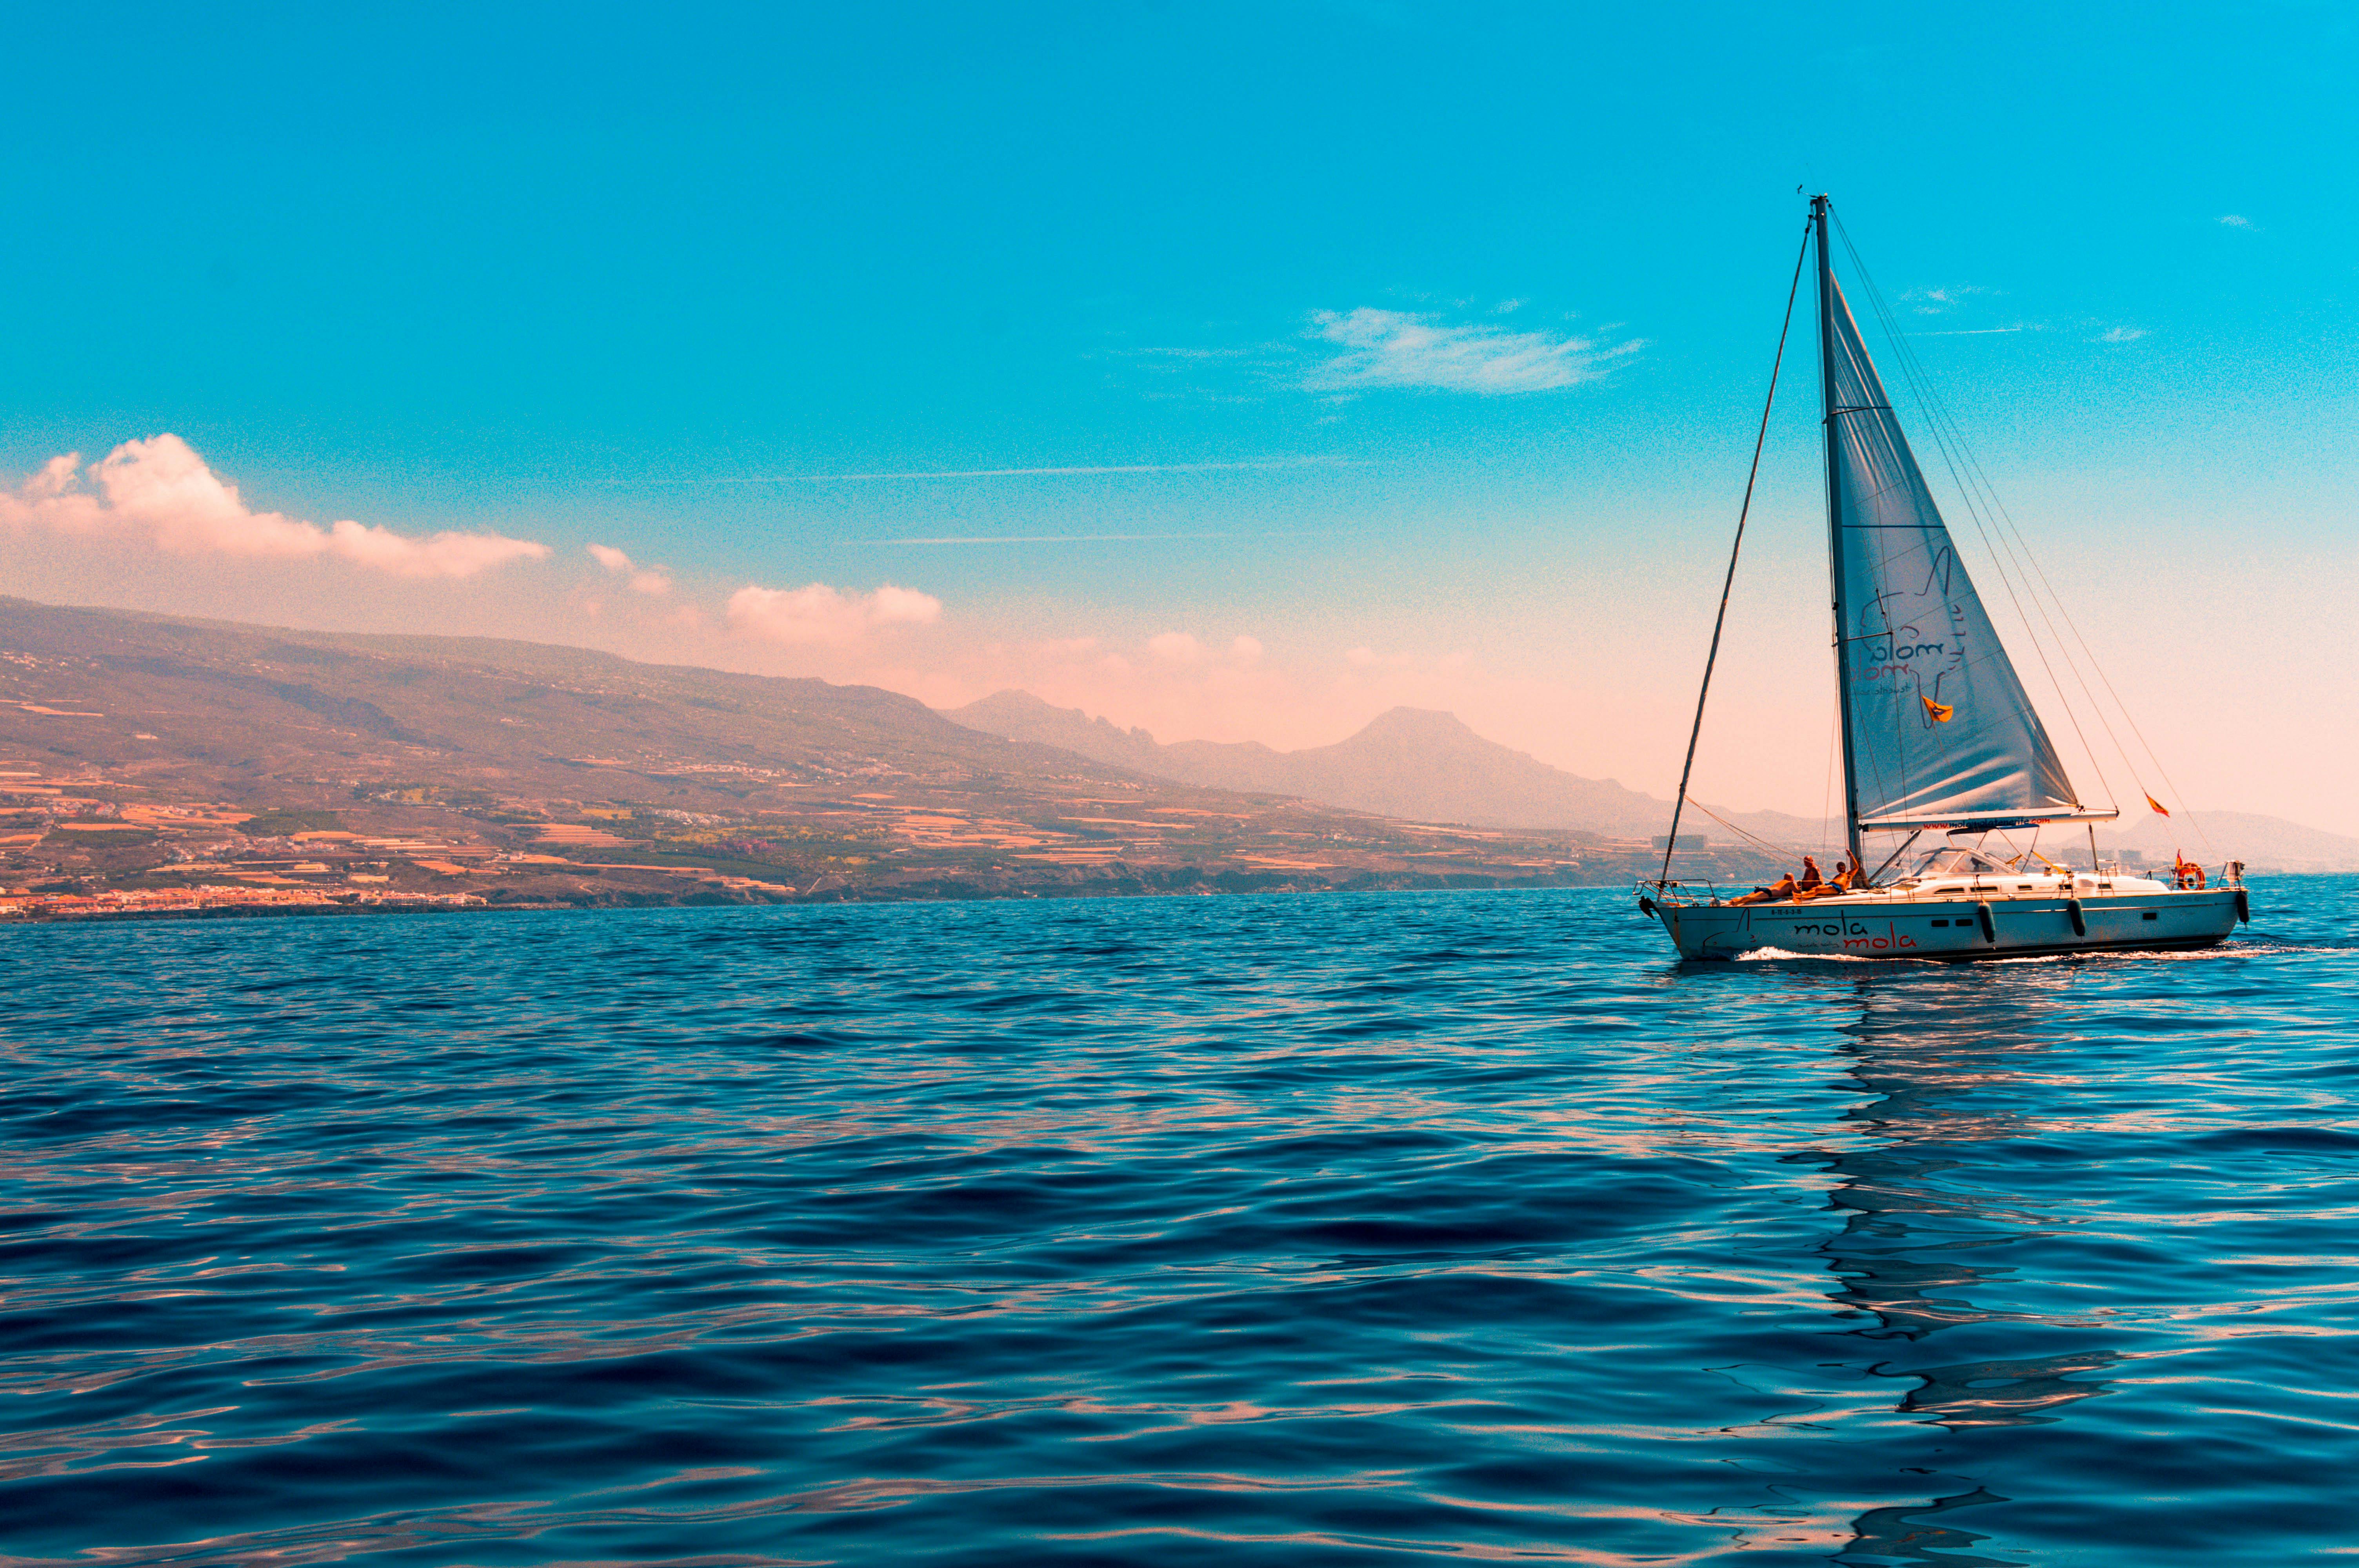 Plain sailing stock image. Image of ship, water, sailing - 31974431